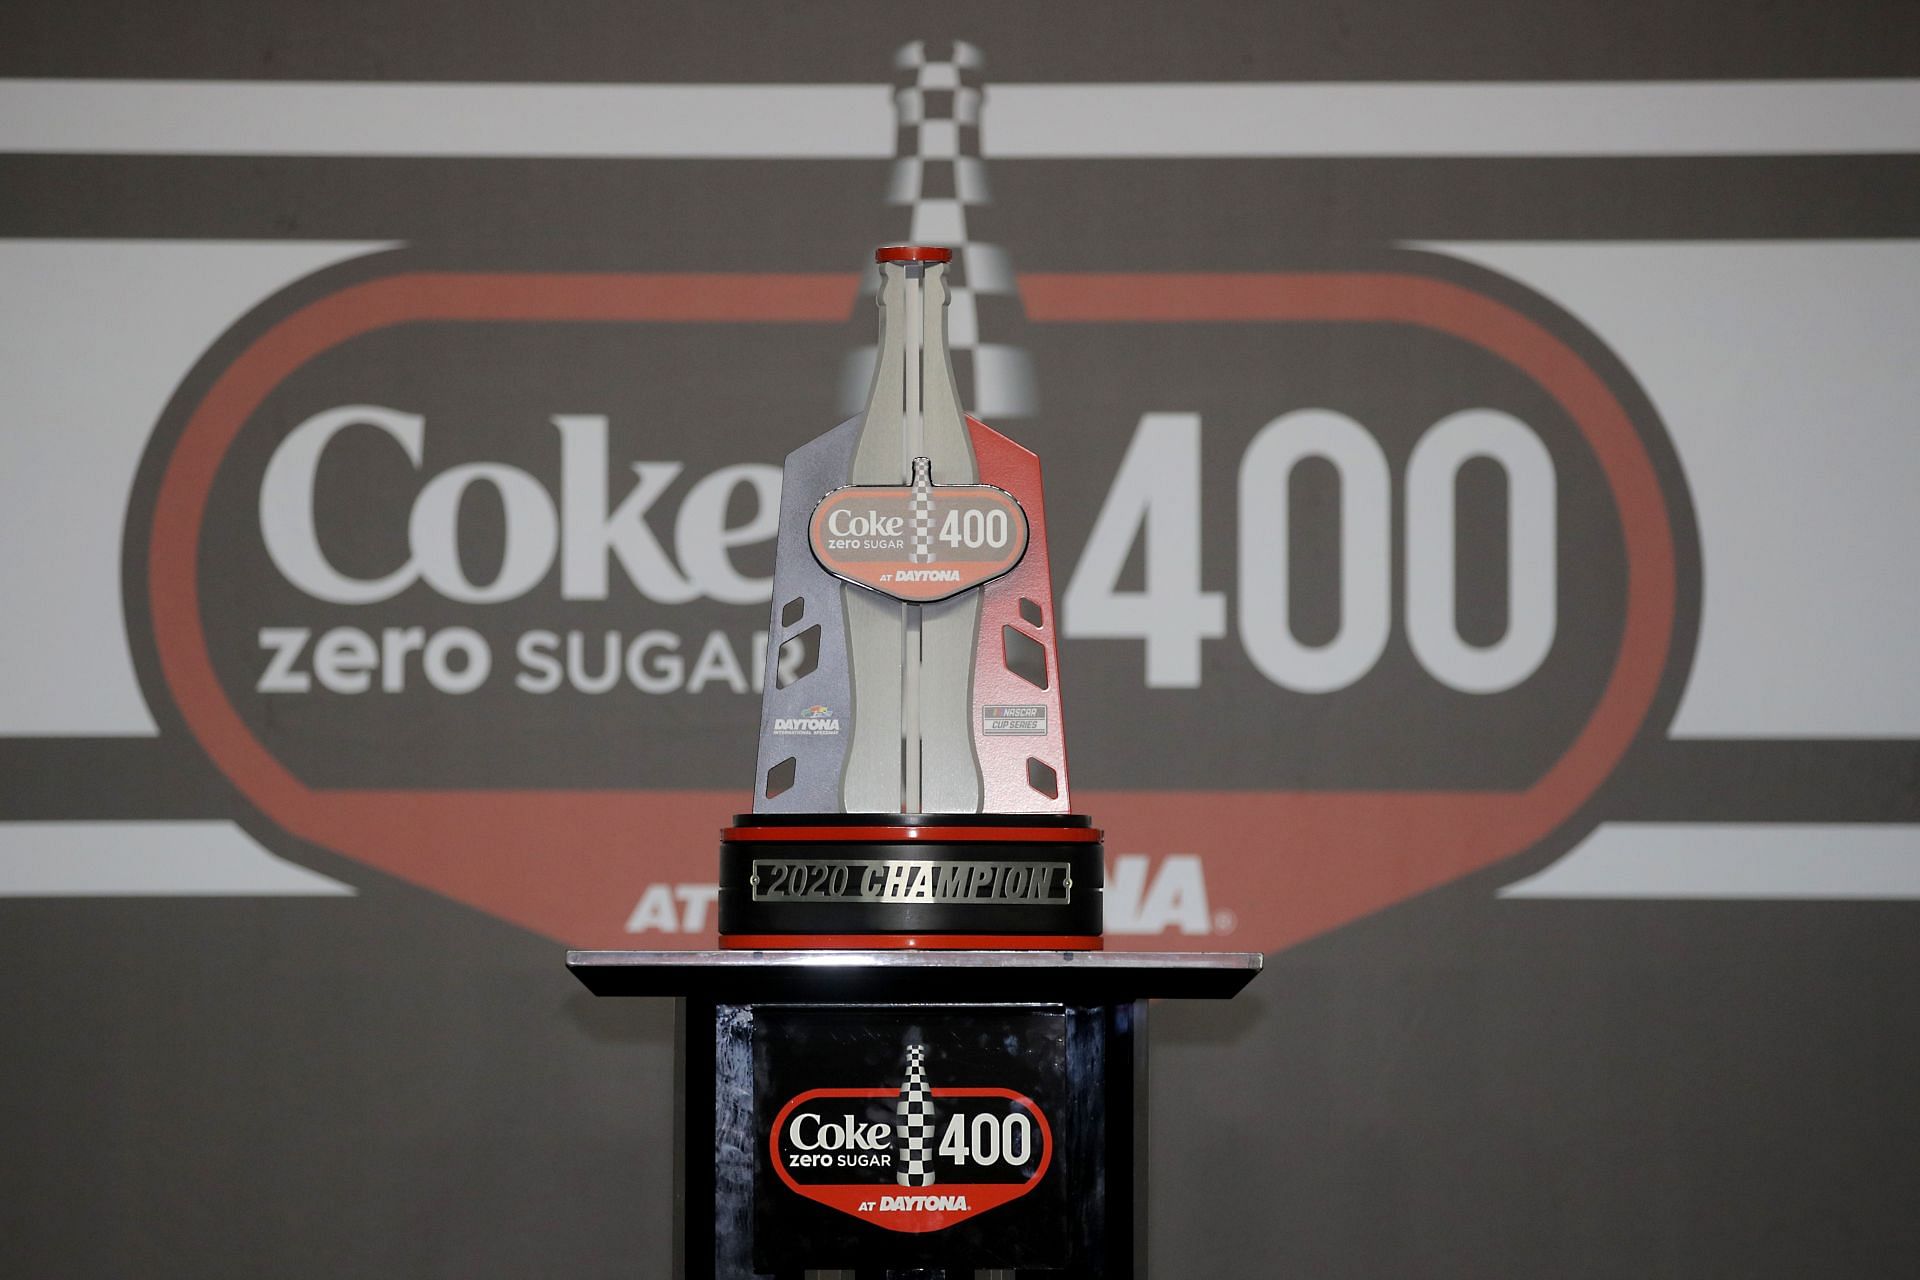 coke zero 400 logo